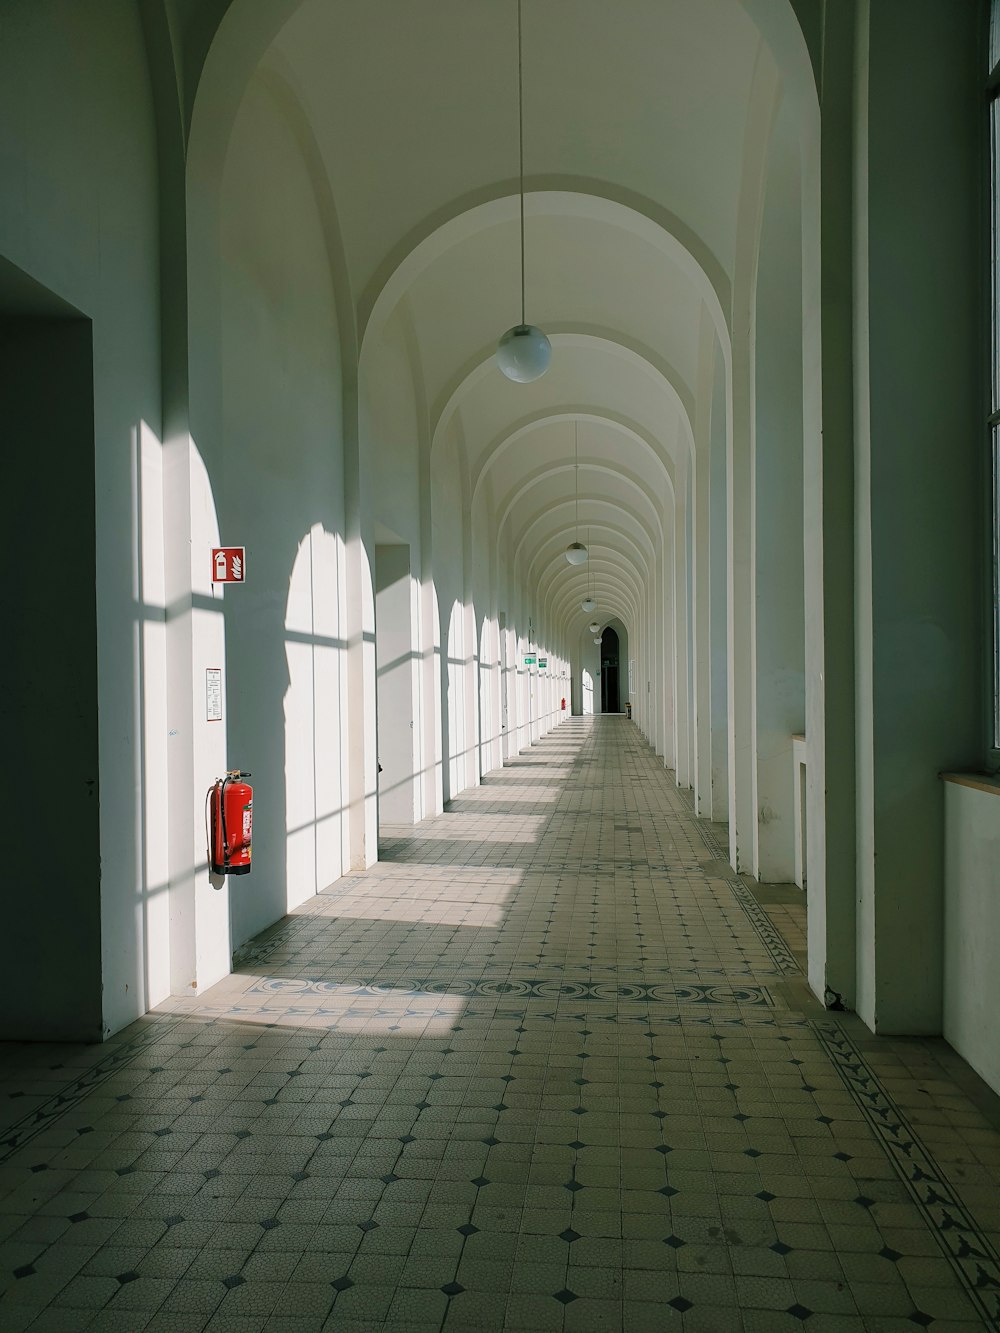 corredor de concreto branco com sinalização vermelha e branca